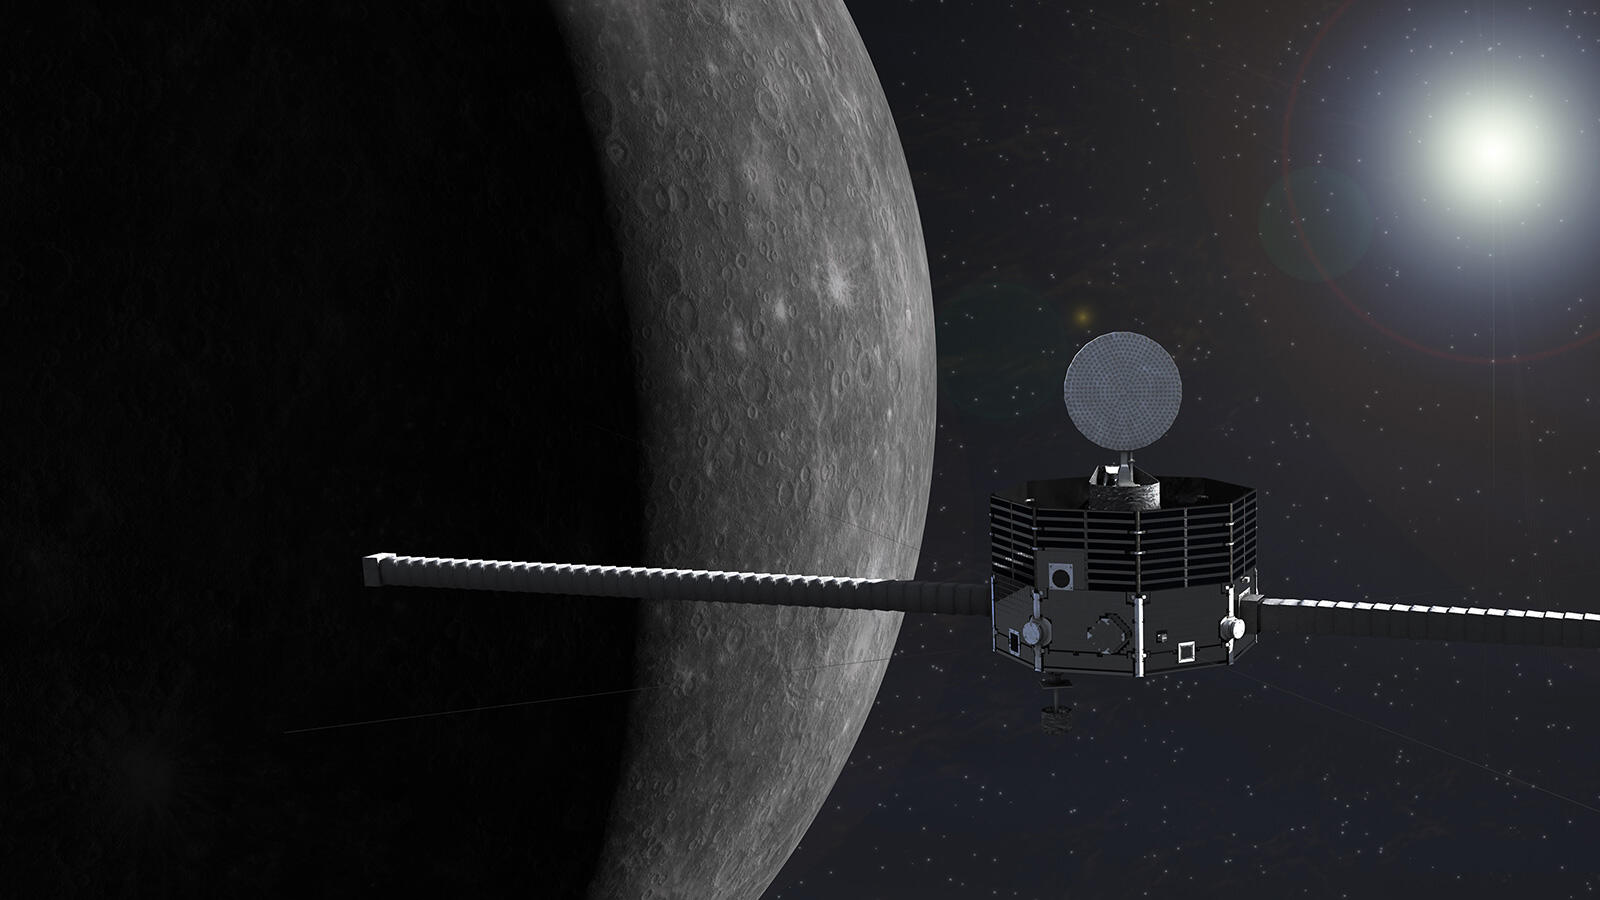 水星磁気圏探査機「みお」のイメージ図